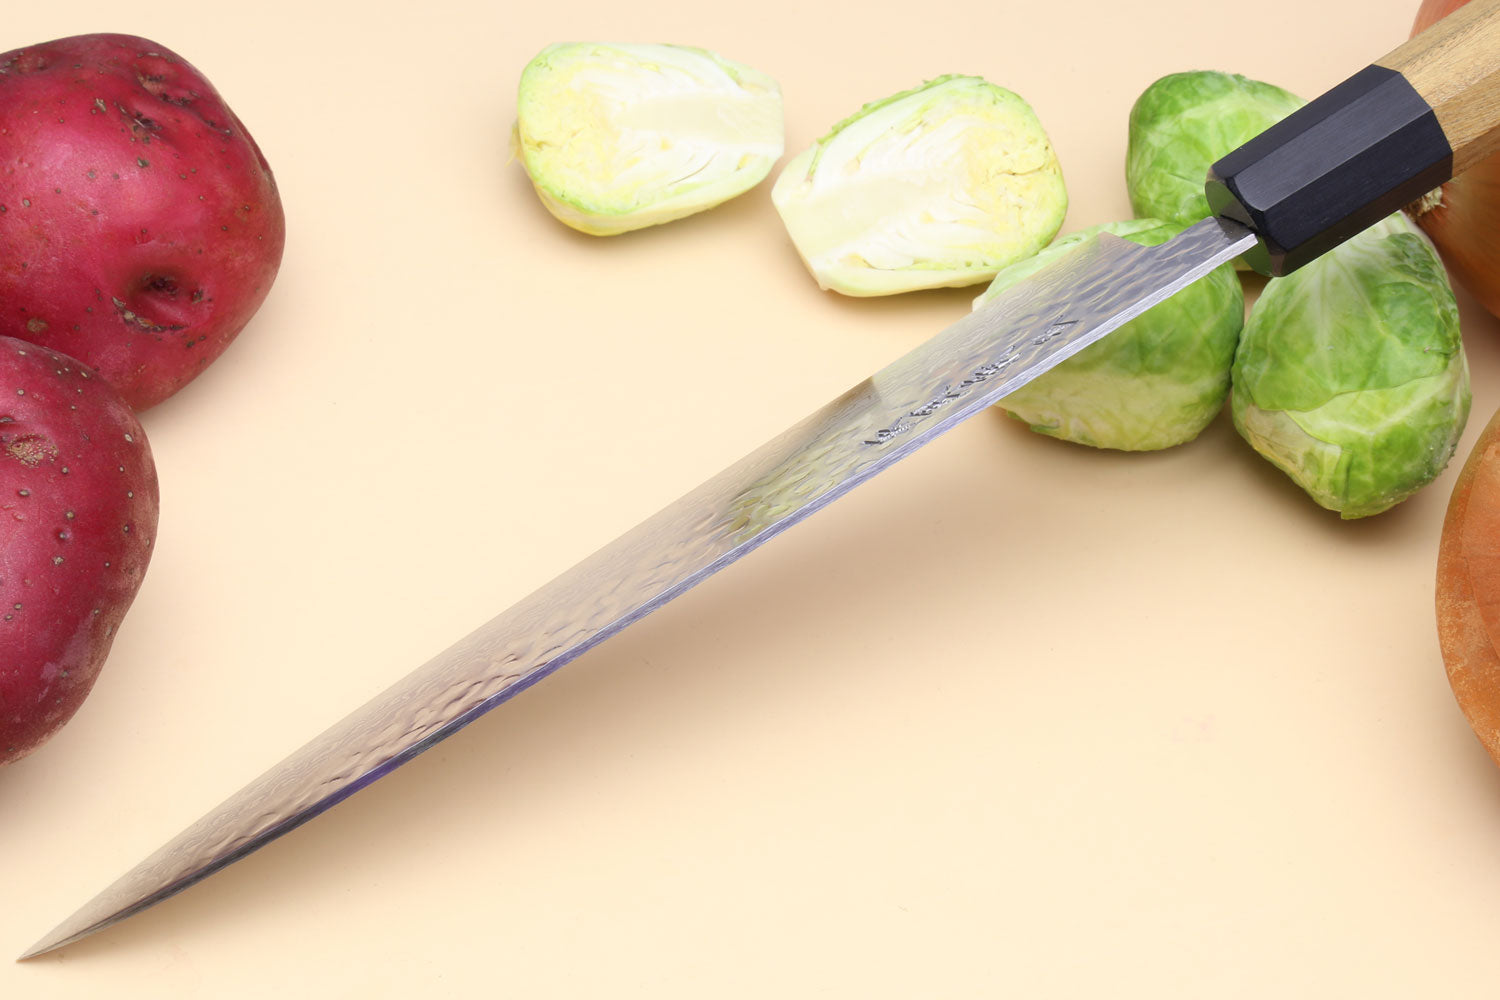 Fruit Paring Knife, Damascus Steel Japanese Vg10 Knife, Ultra Sharp Blade  And Ergonomic Handle, Multifunctional Fruit Knife With Sheath - Temu